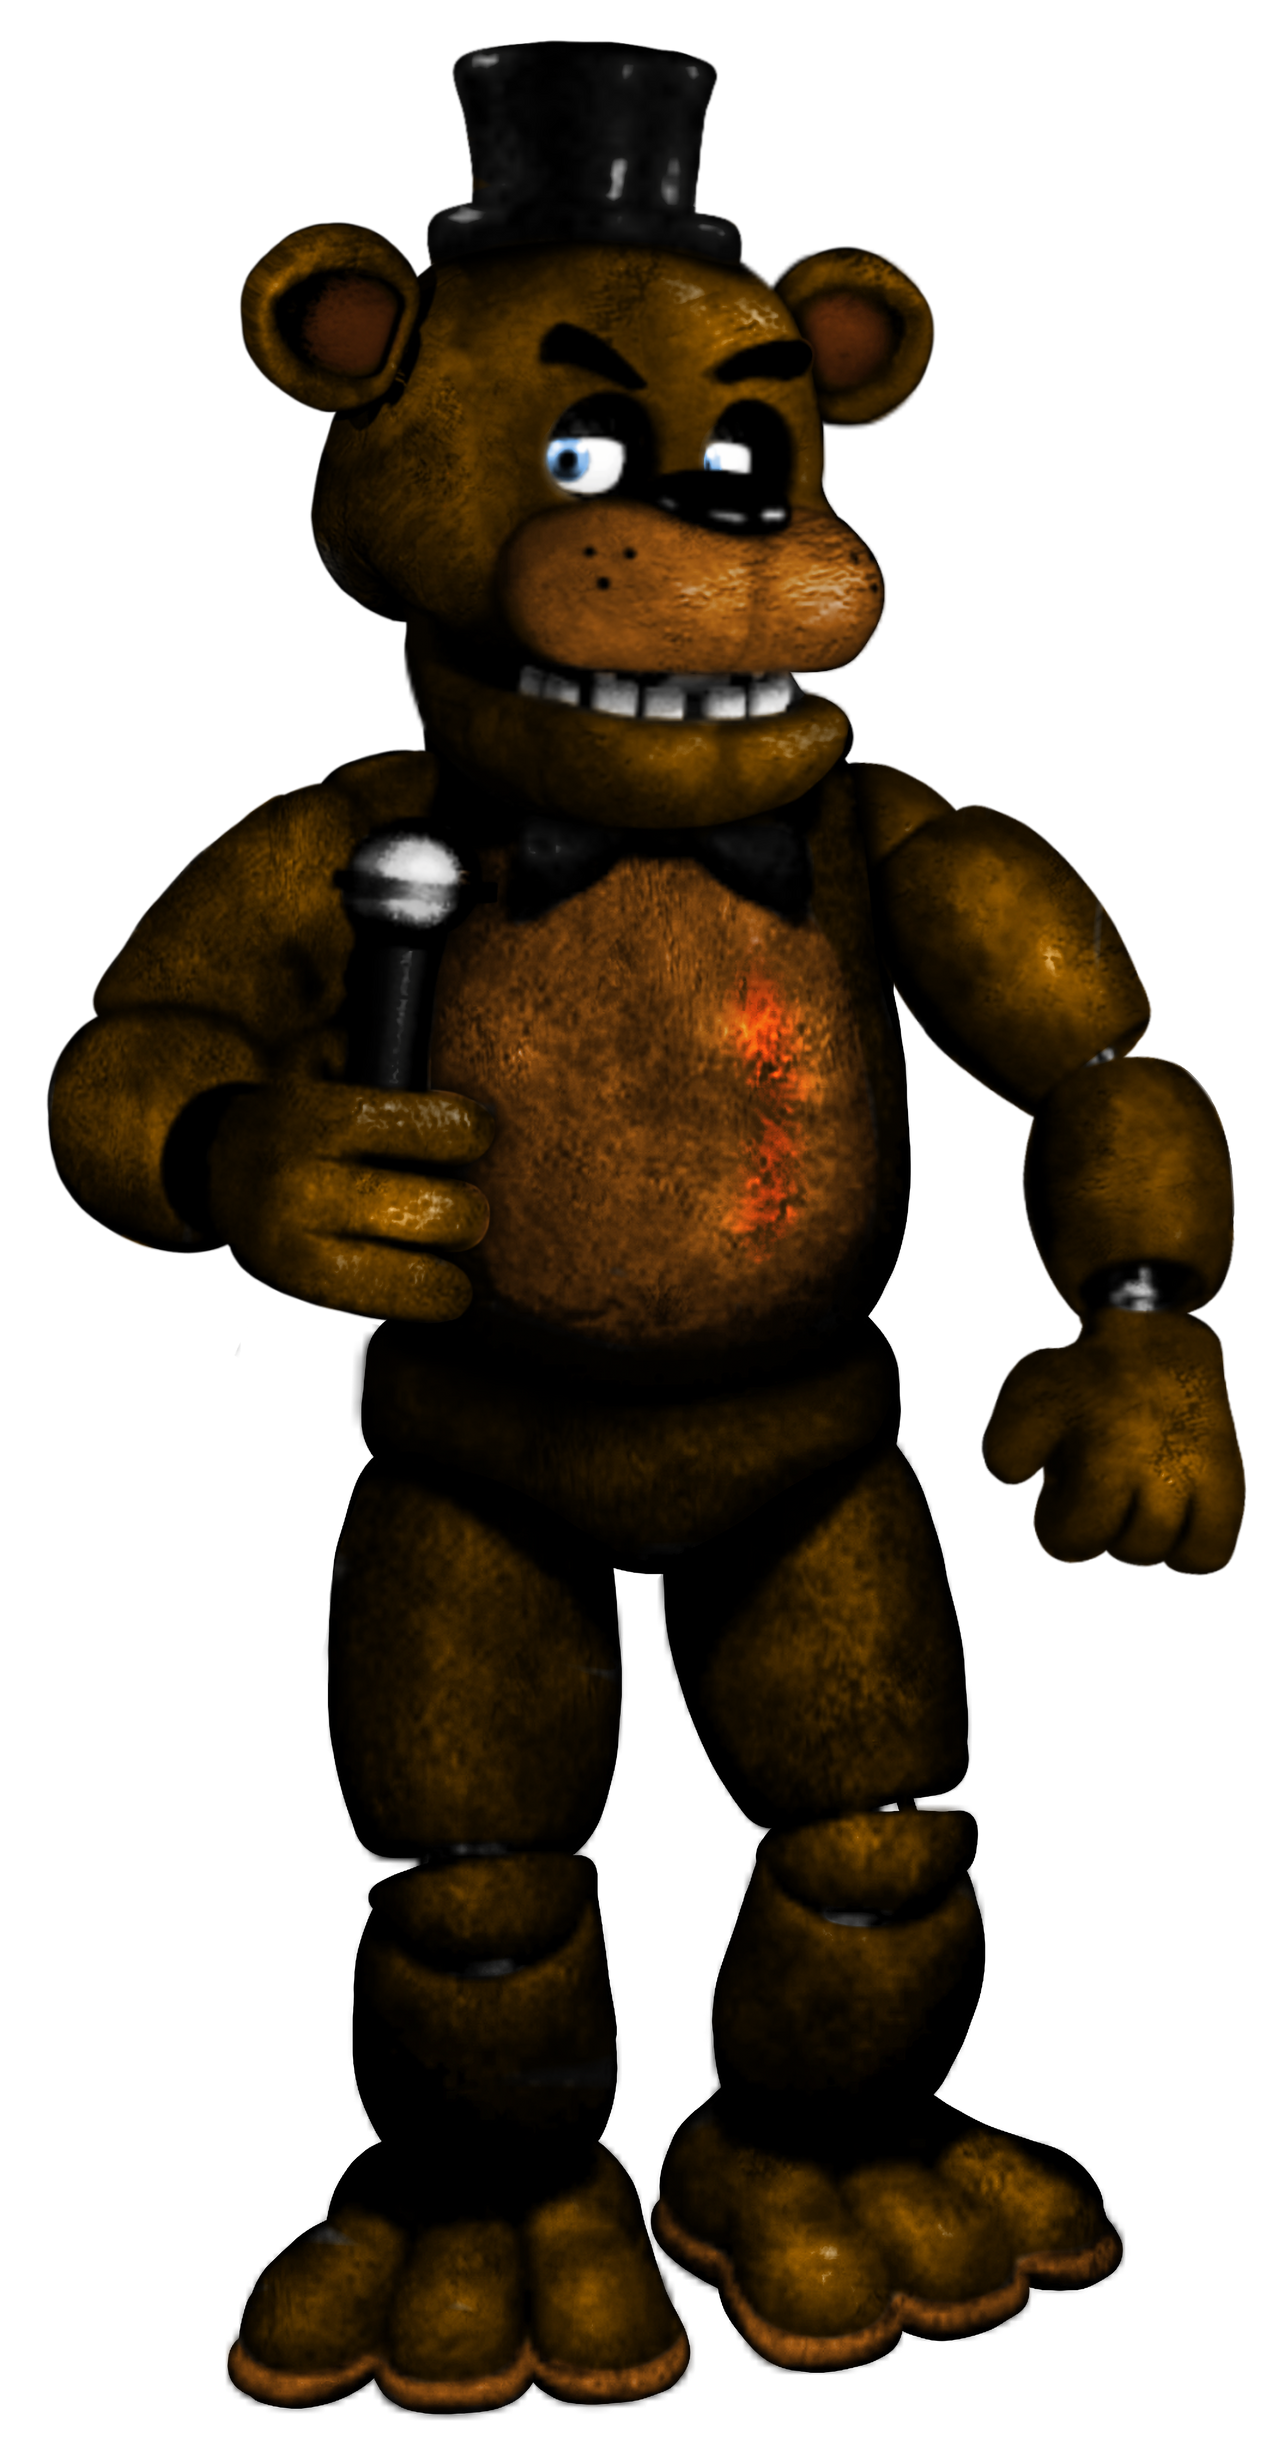 Freddy fazbear from fnaf 1